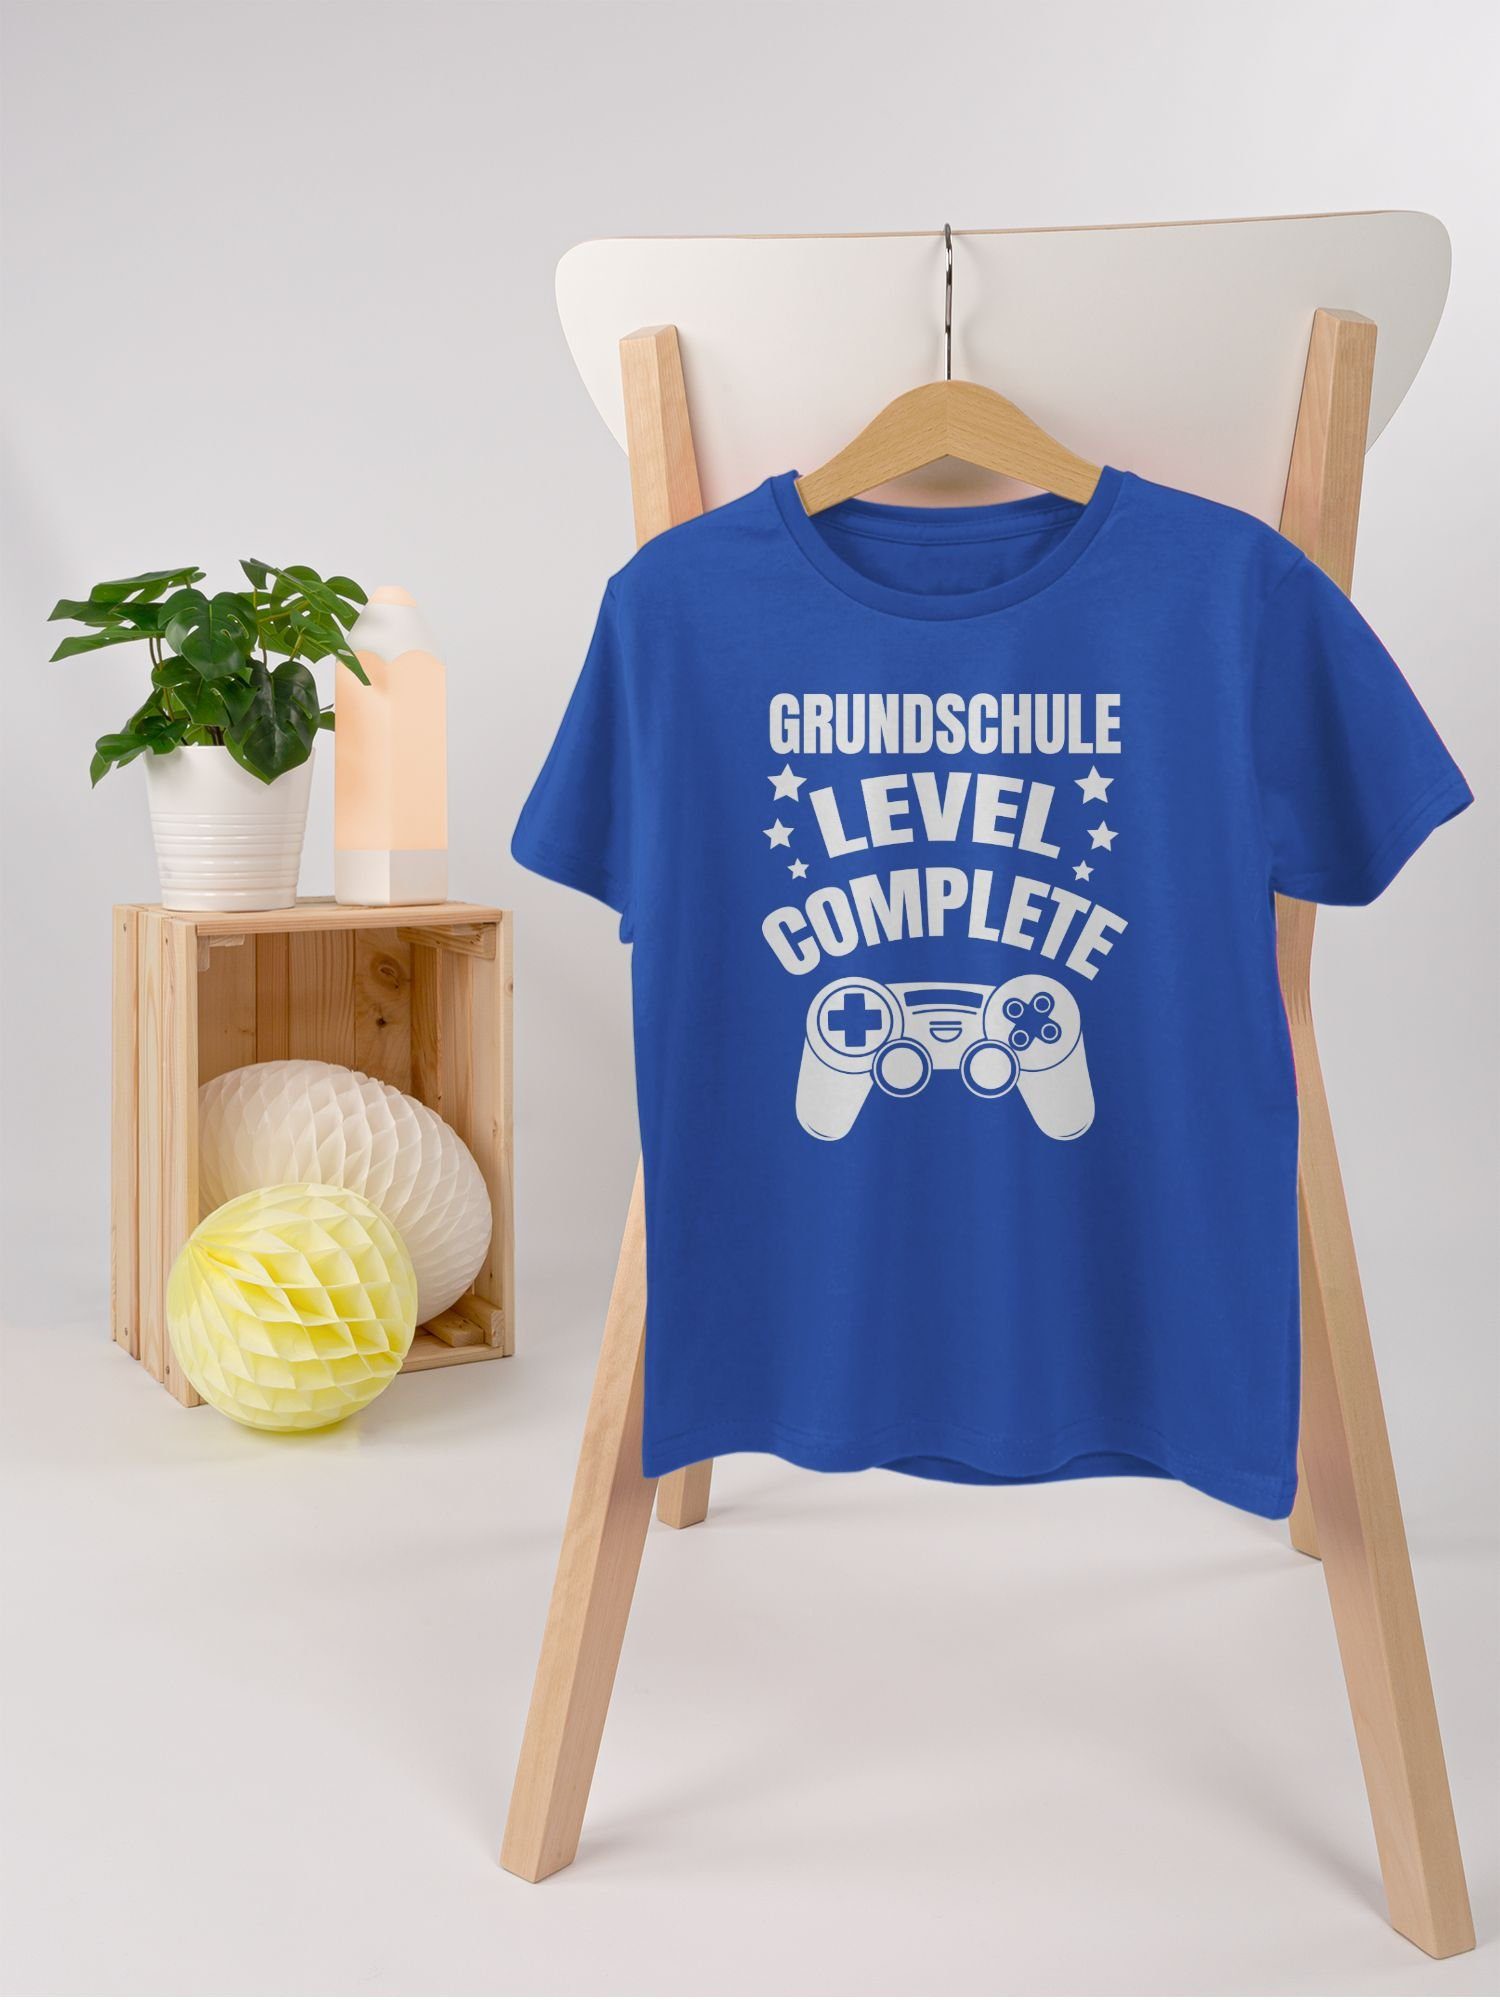 Einschulung Complete Royalblau Junge T-Shirt weiß 3 - Shirtracer Level Grundschule Schulanfang Geschenke